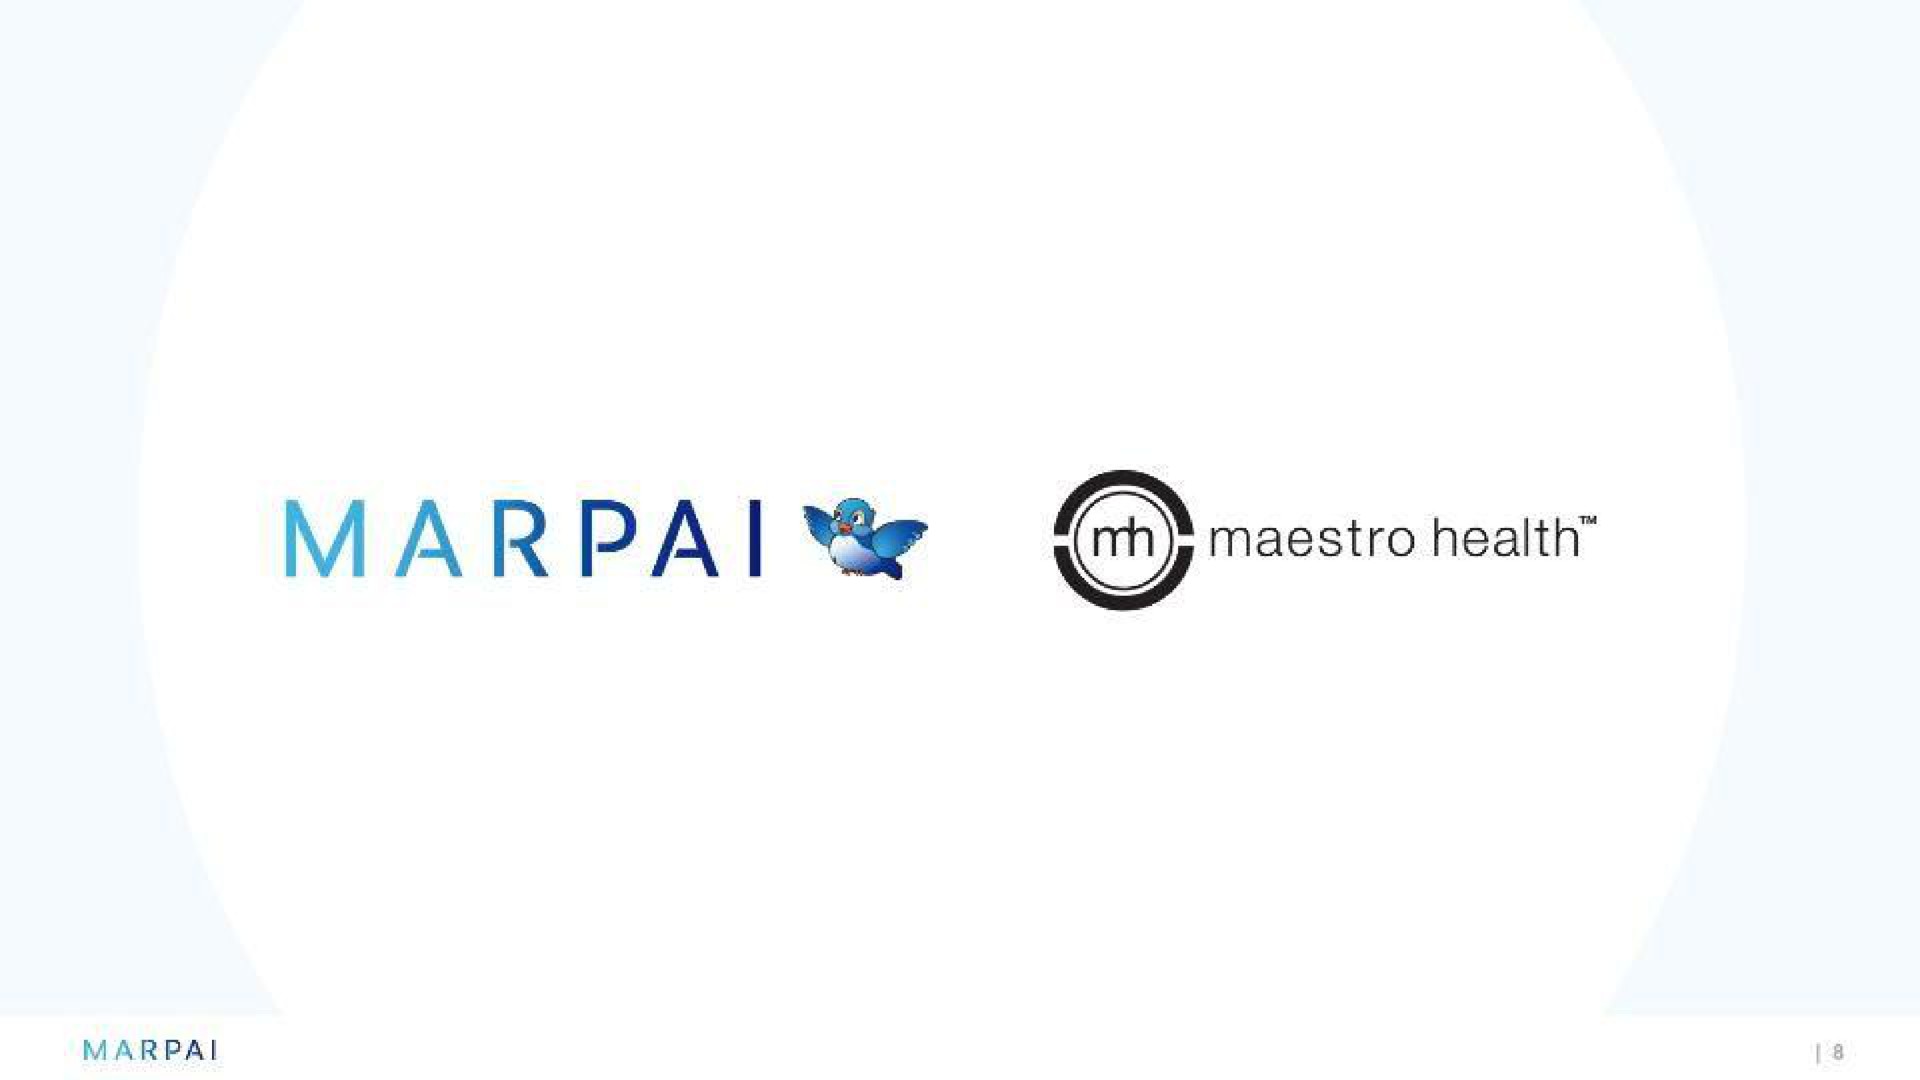 a we maestro health | Marpai